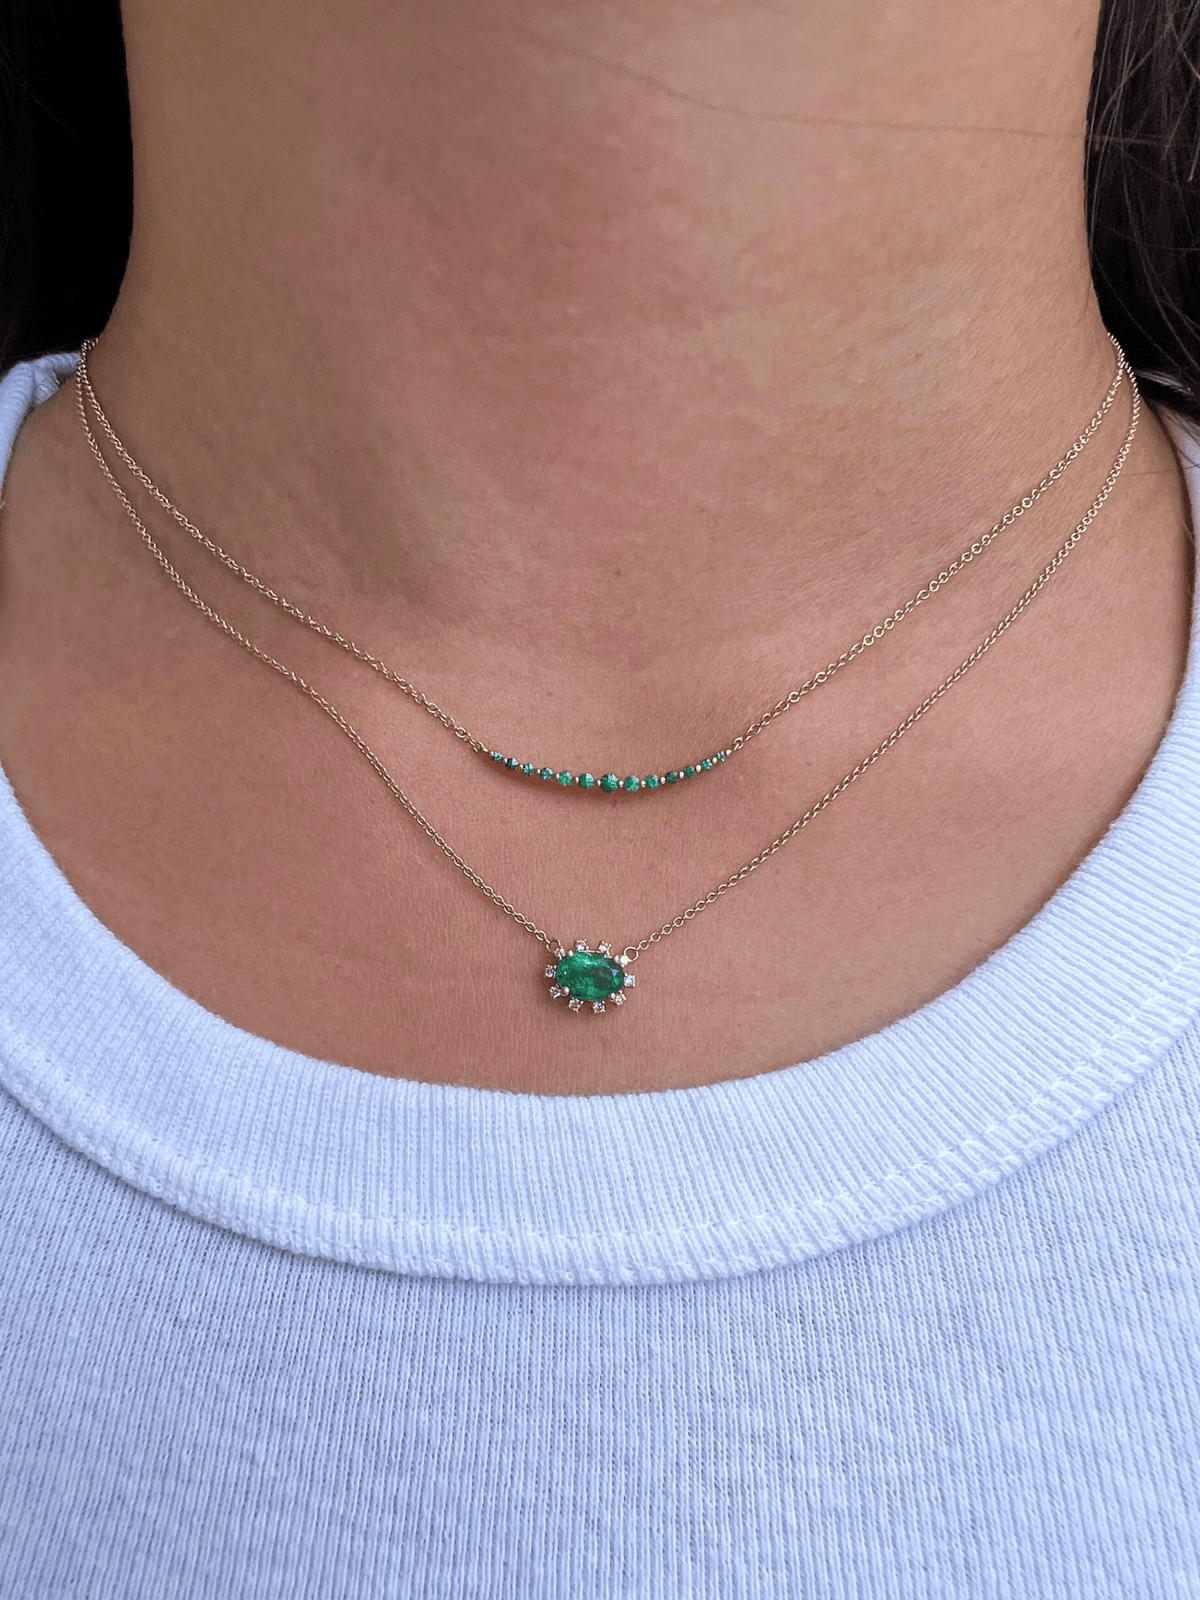 Chasing Emeralds Necklace 14K - LeMel